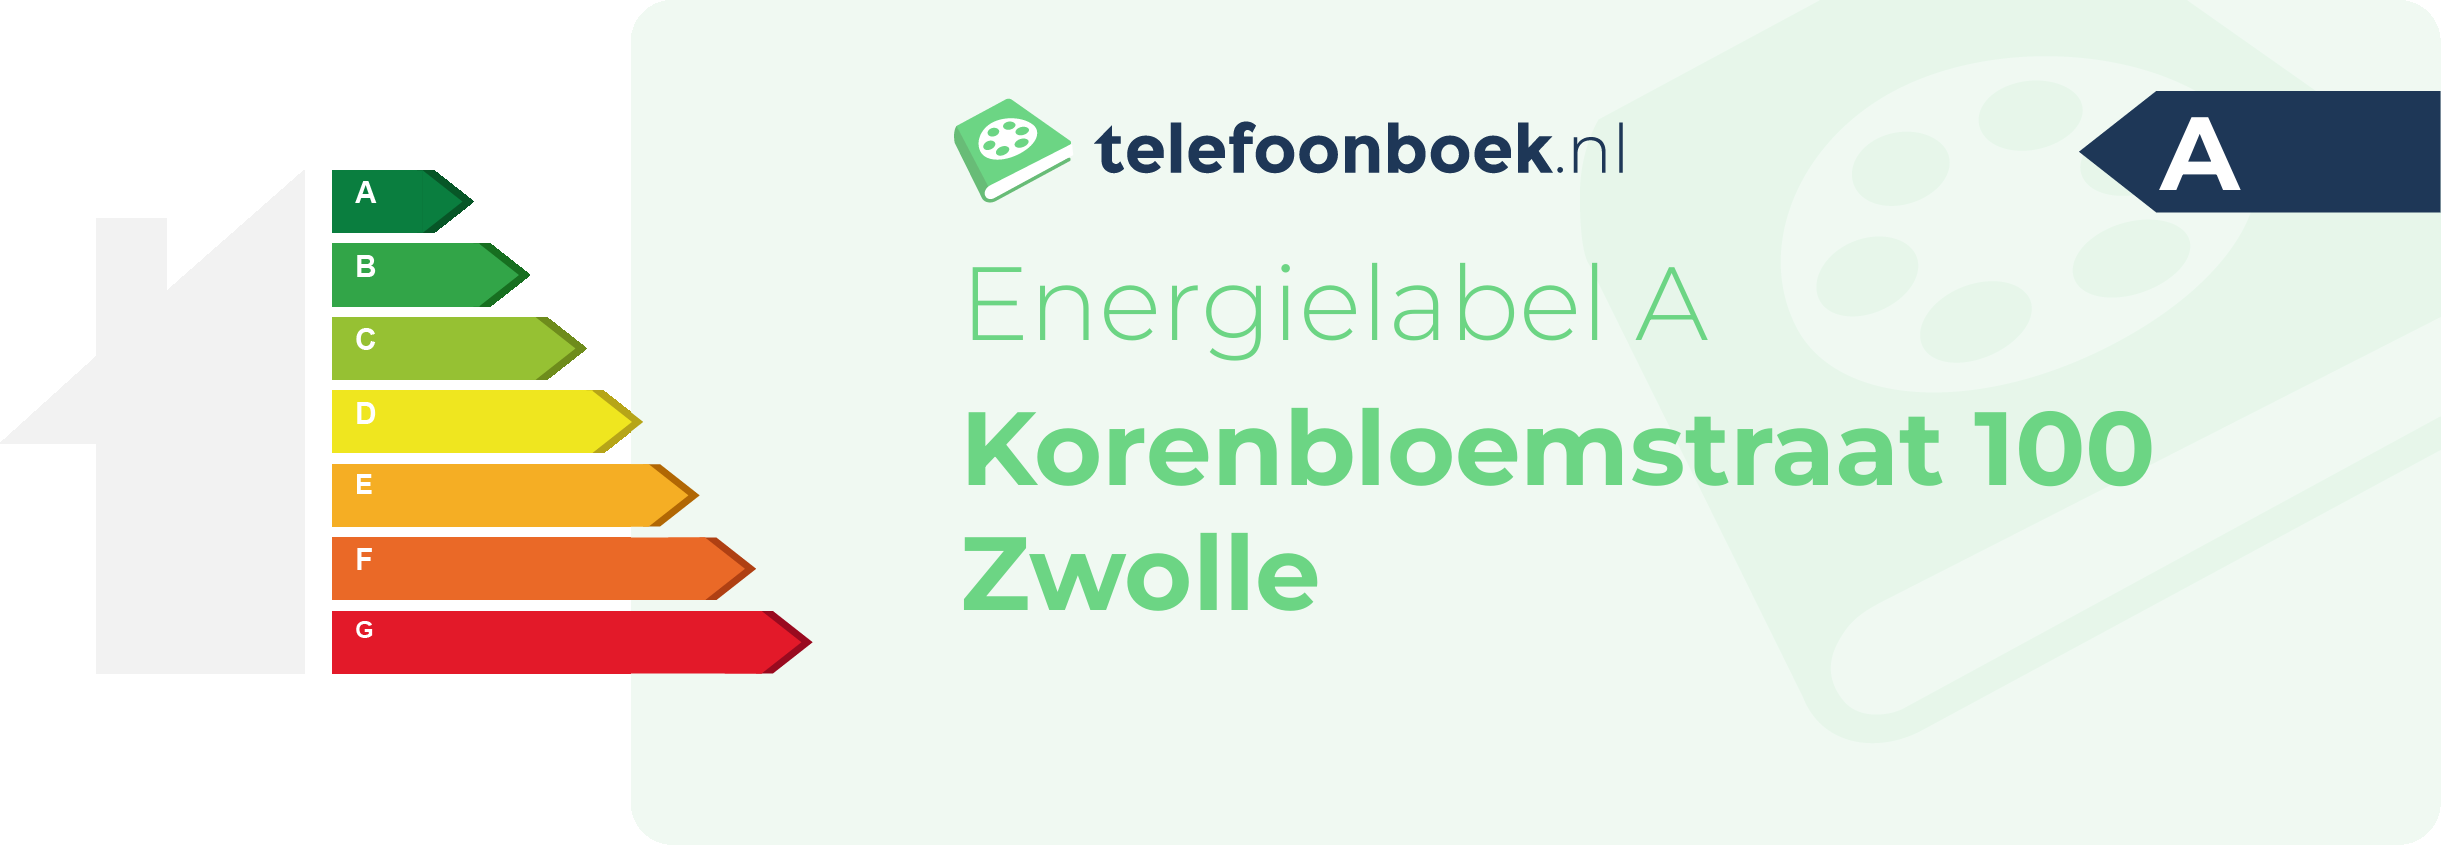 Energielabel Korenbloemstraat 100 Zwolle